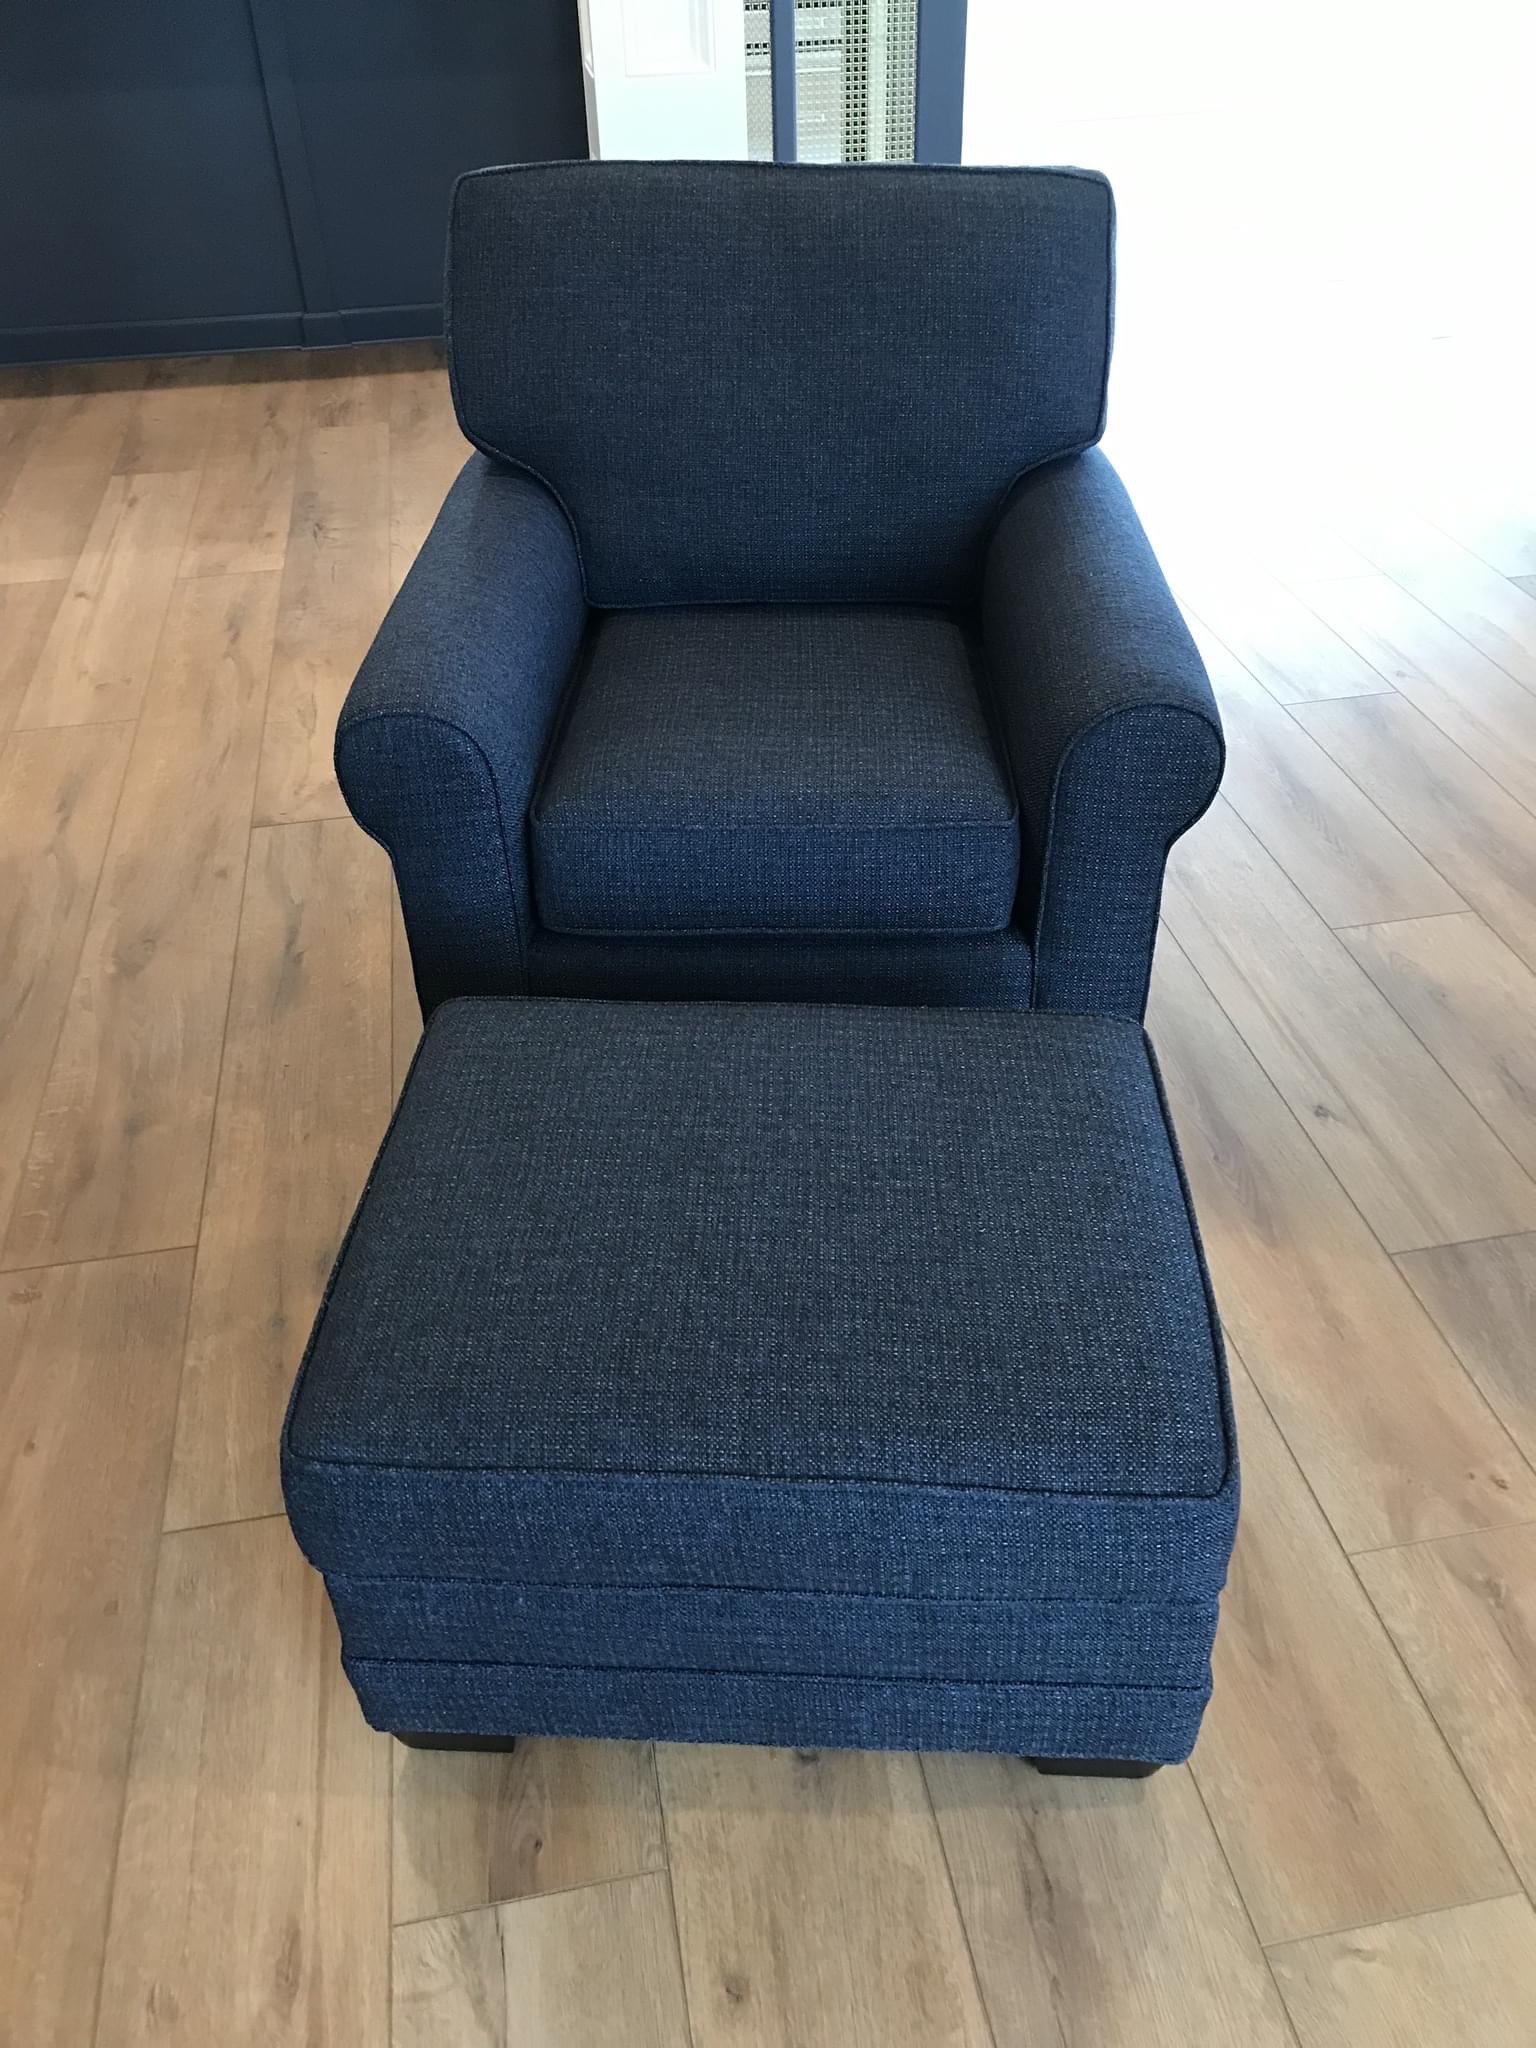 Bleach Cleanable Club Chair Hilton Head Furniture